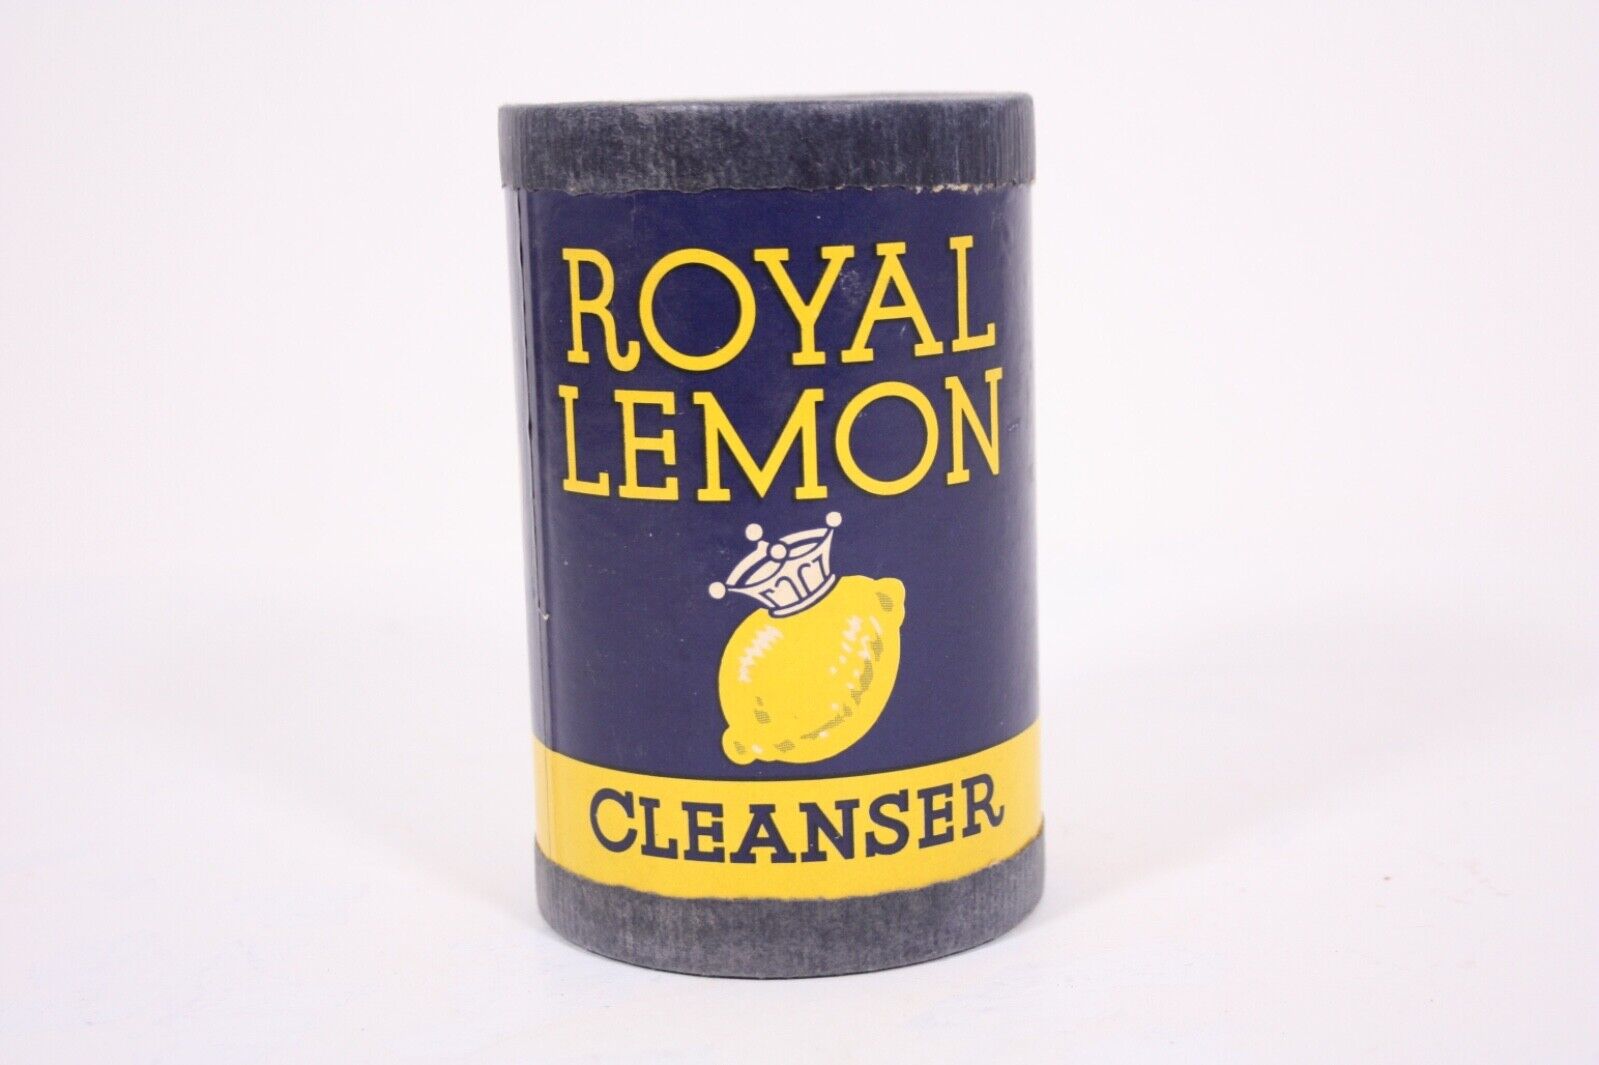 Royal Lemon Cleanser Vtg New Old Stock Minneapolis MN